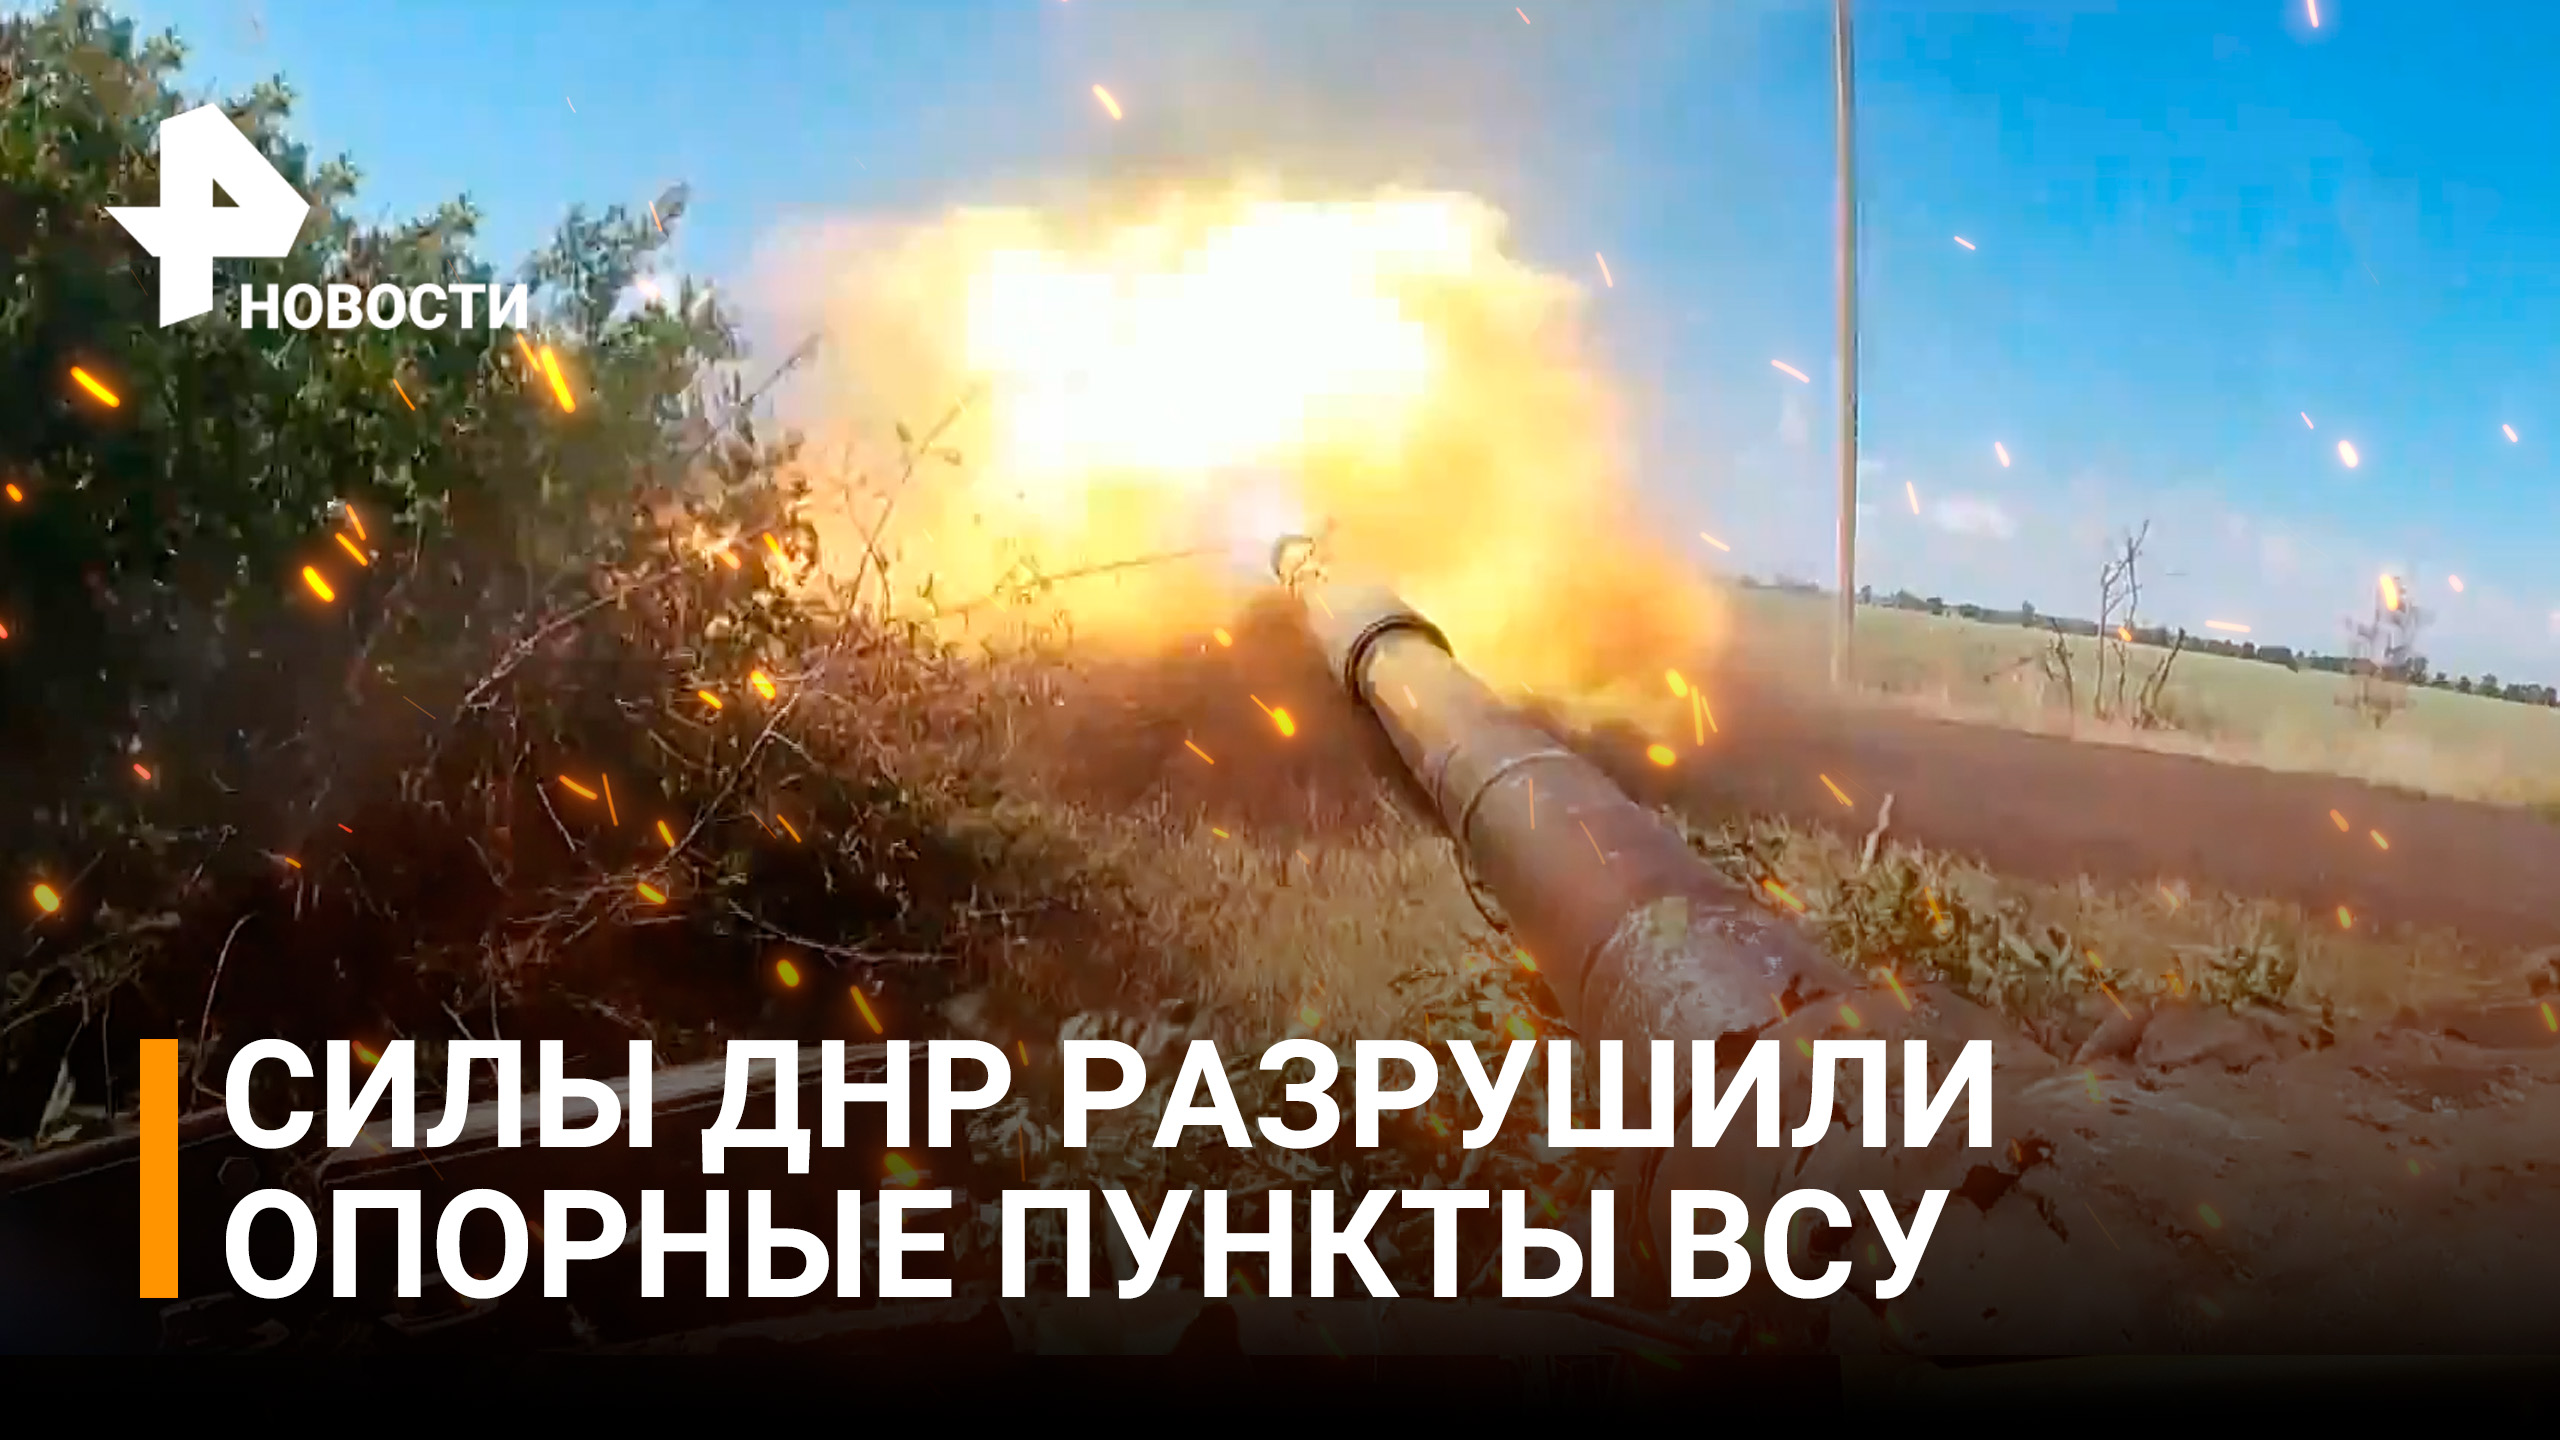 Танковые и артиллерийские подразделения ДНР уничтожили опорные пункты ВСУ / РЕН Новости